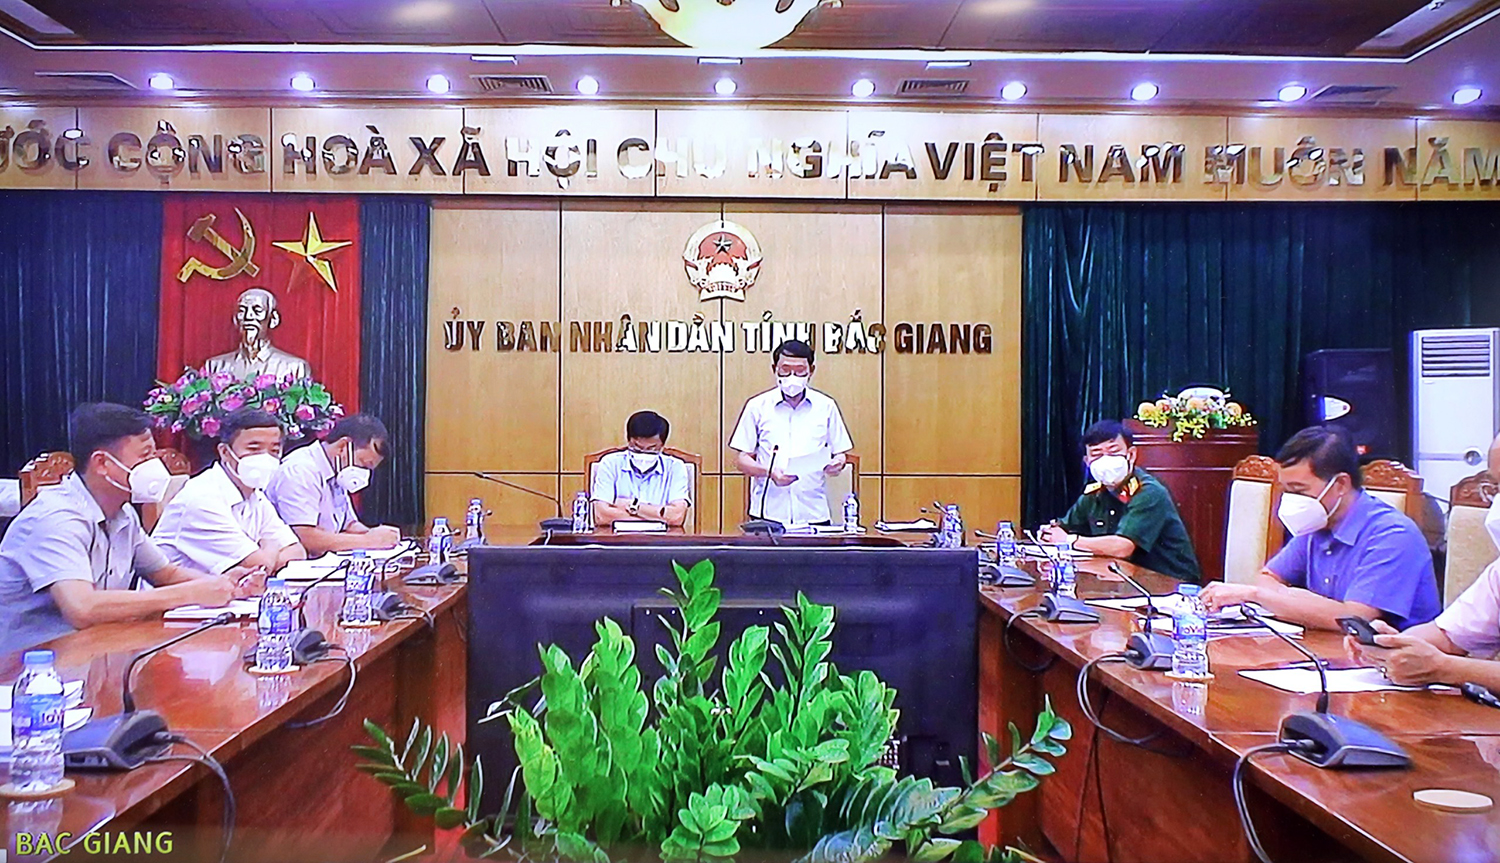 Phó Thủ tướng Vũ Đức Đam yêu cầu tỉnh Bắc Giang phải tập trung giãn tiếp mật độ trong các khu cách ly tập trung có ca nhiễm để chấm dứt ngay tình trạng lây nhiễm chéo.